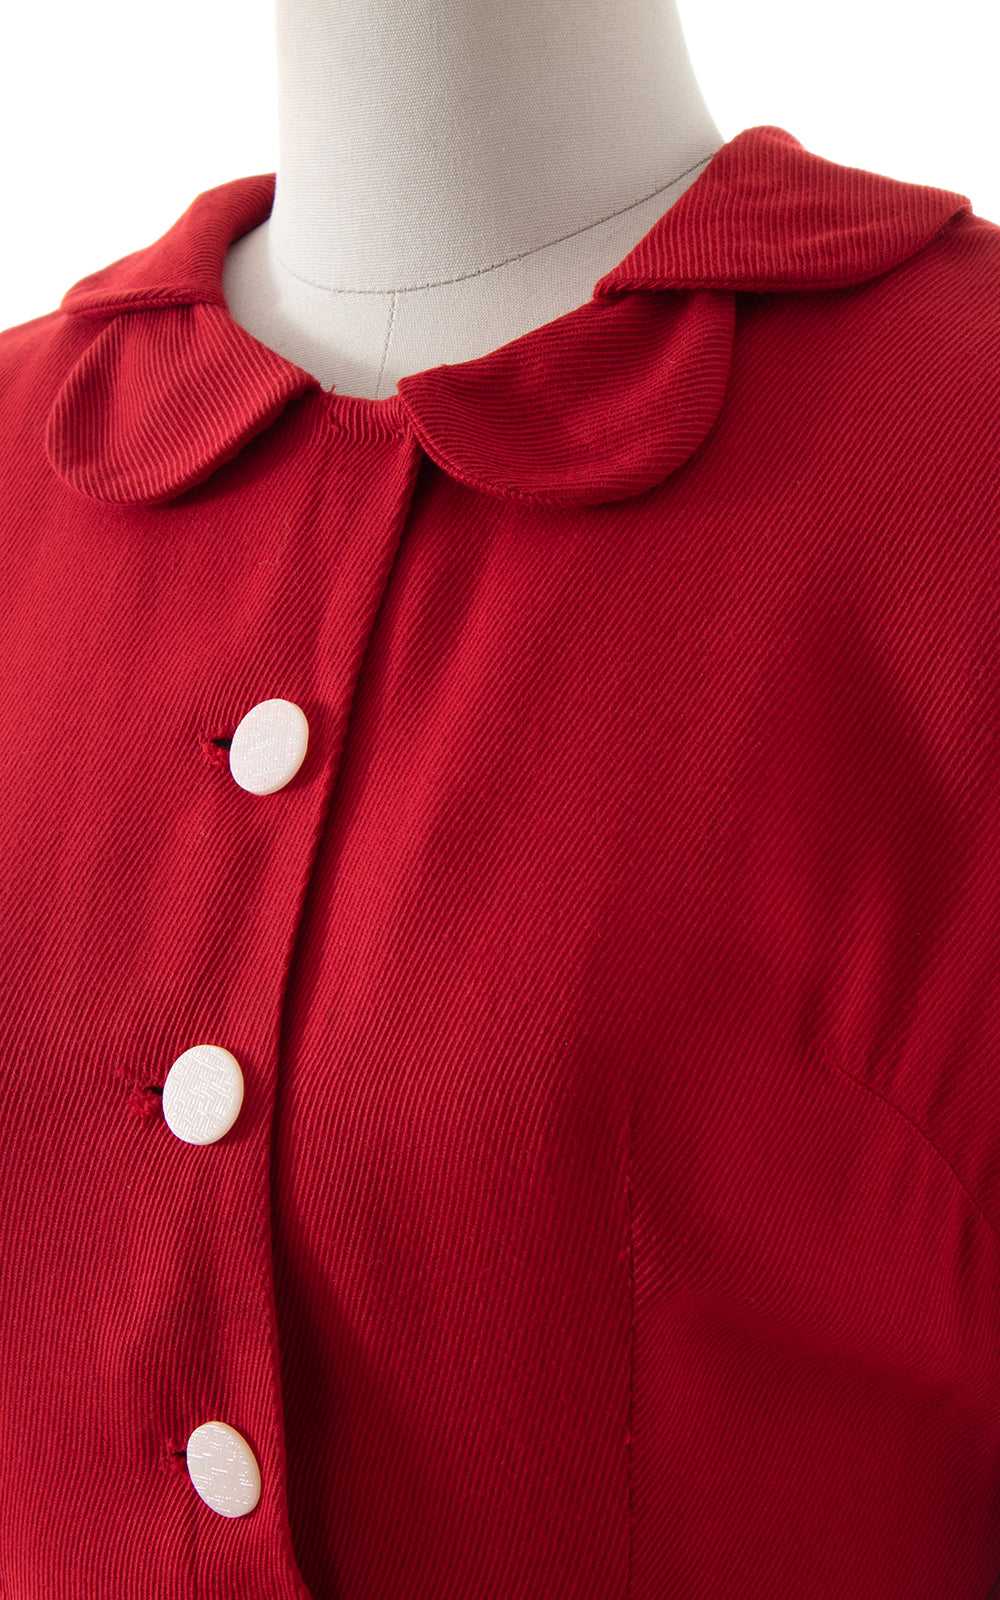 1960s Red Peter Pan Collar Shirt Dress | medium - image 2